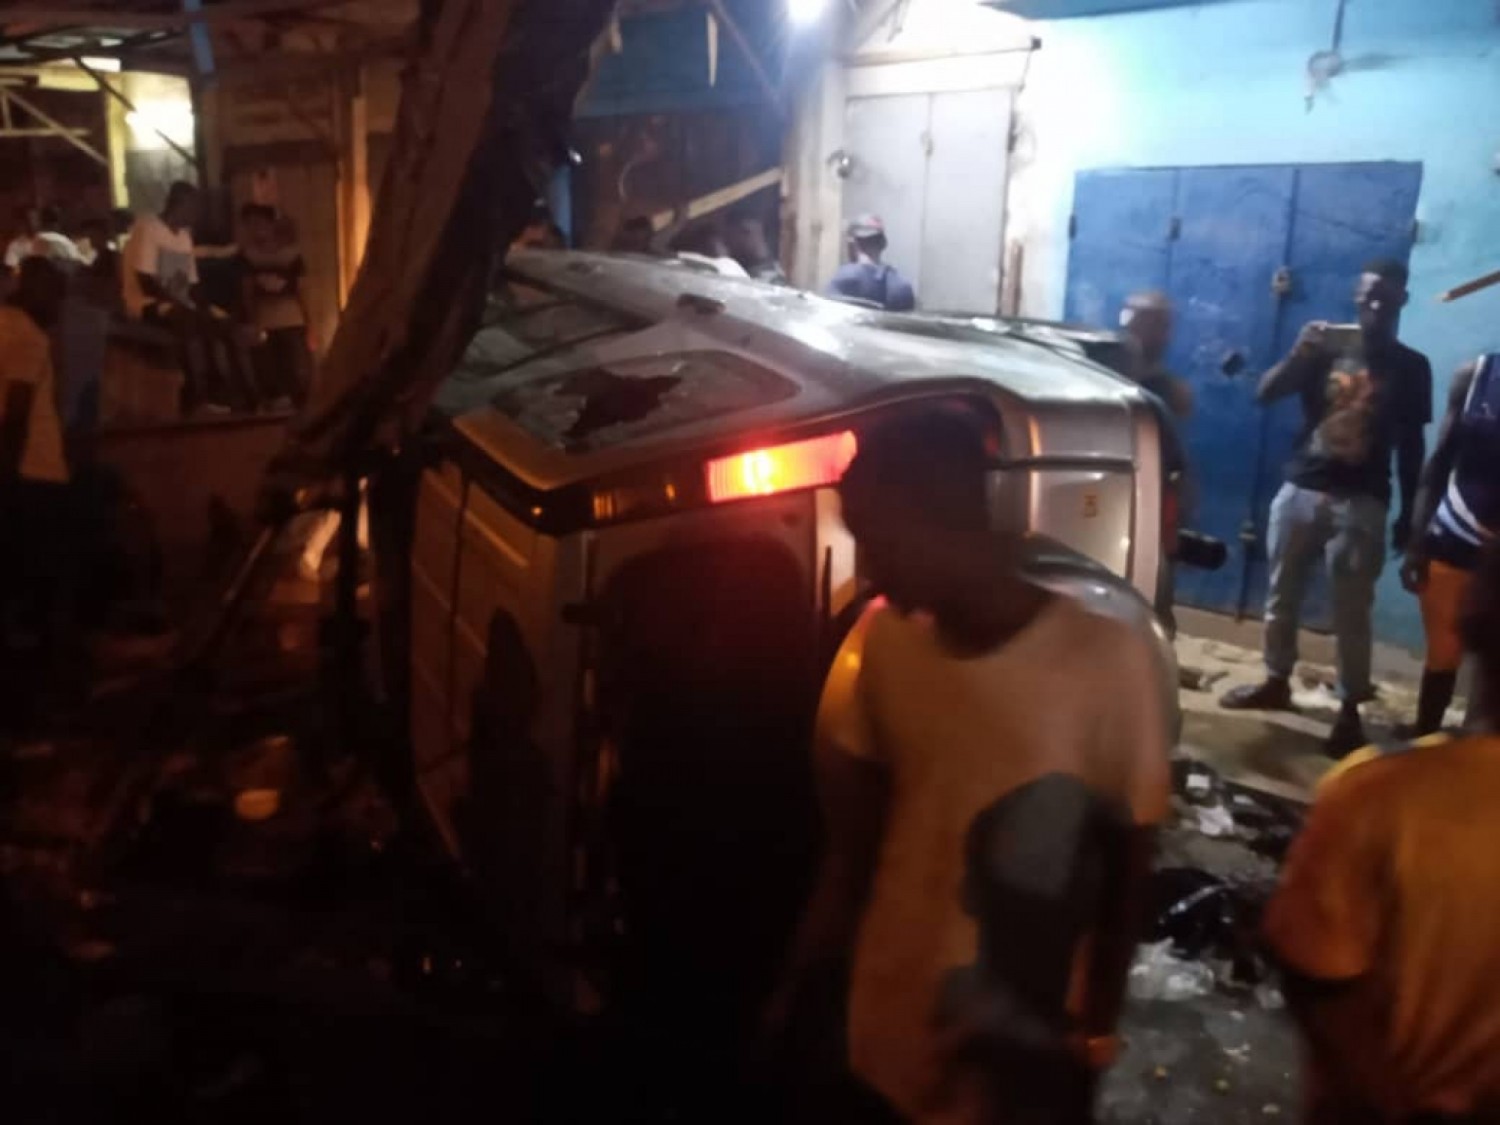 Côte d'Ivoire : Yopougon, un véhicule personnel termine sa course nuitamment dans un garbadrome et fait des blessés